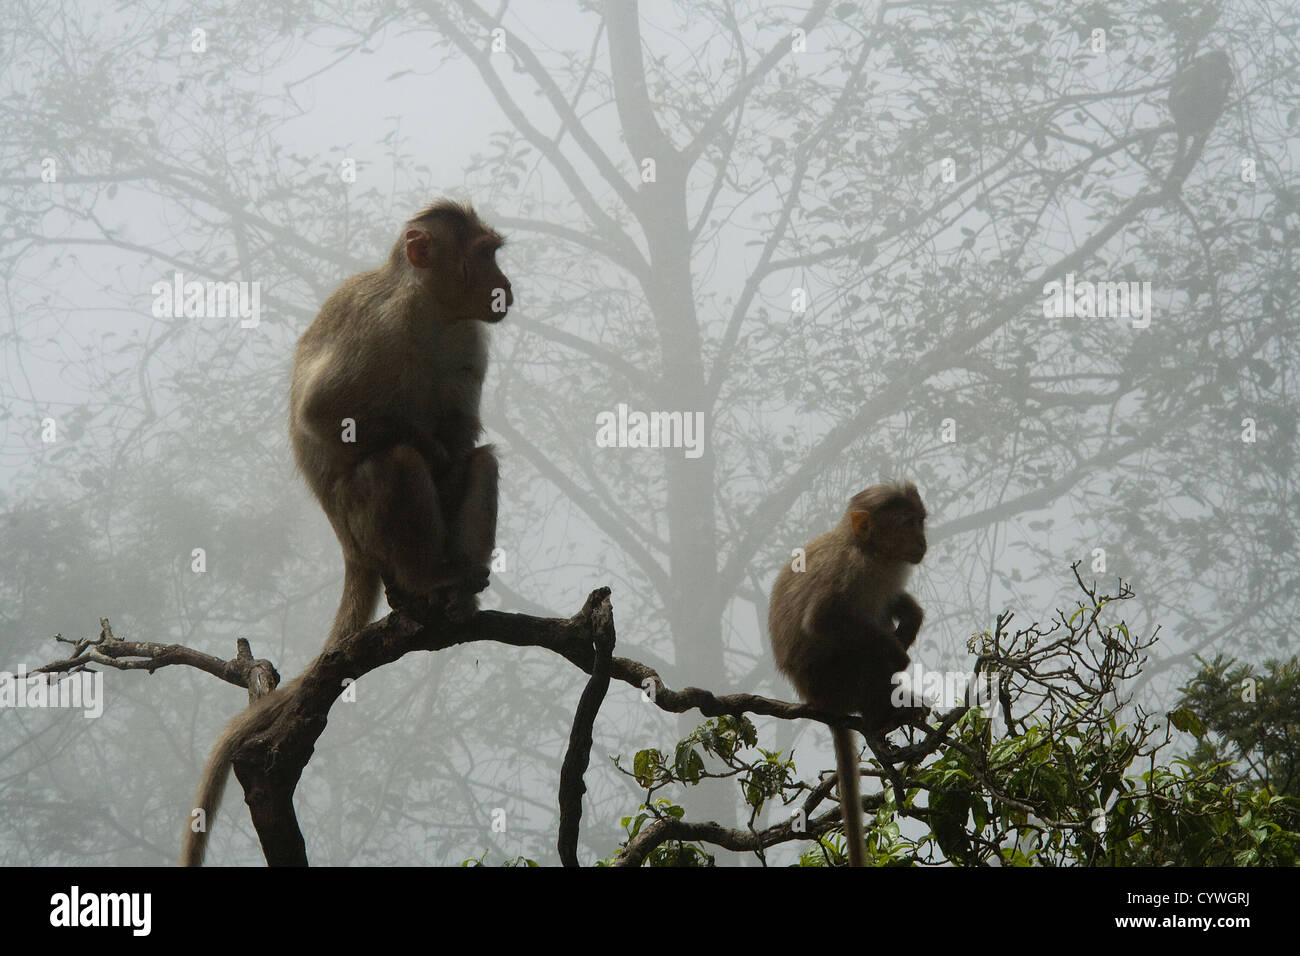 Zwei Affen sitzen auf einem Baum Zweig am kalten, nebligen Morgen Stockfoto